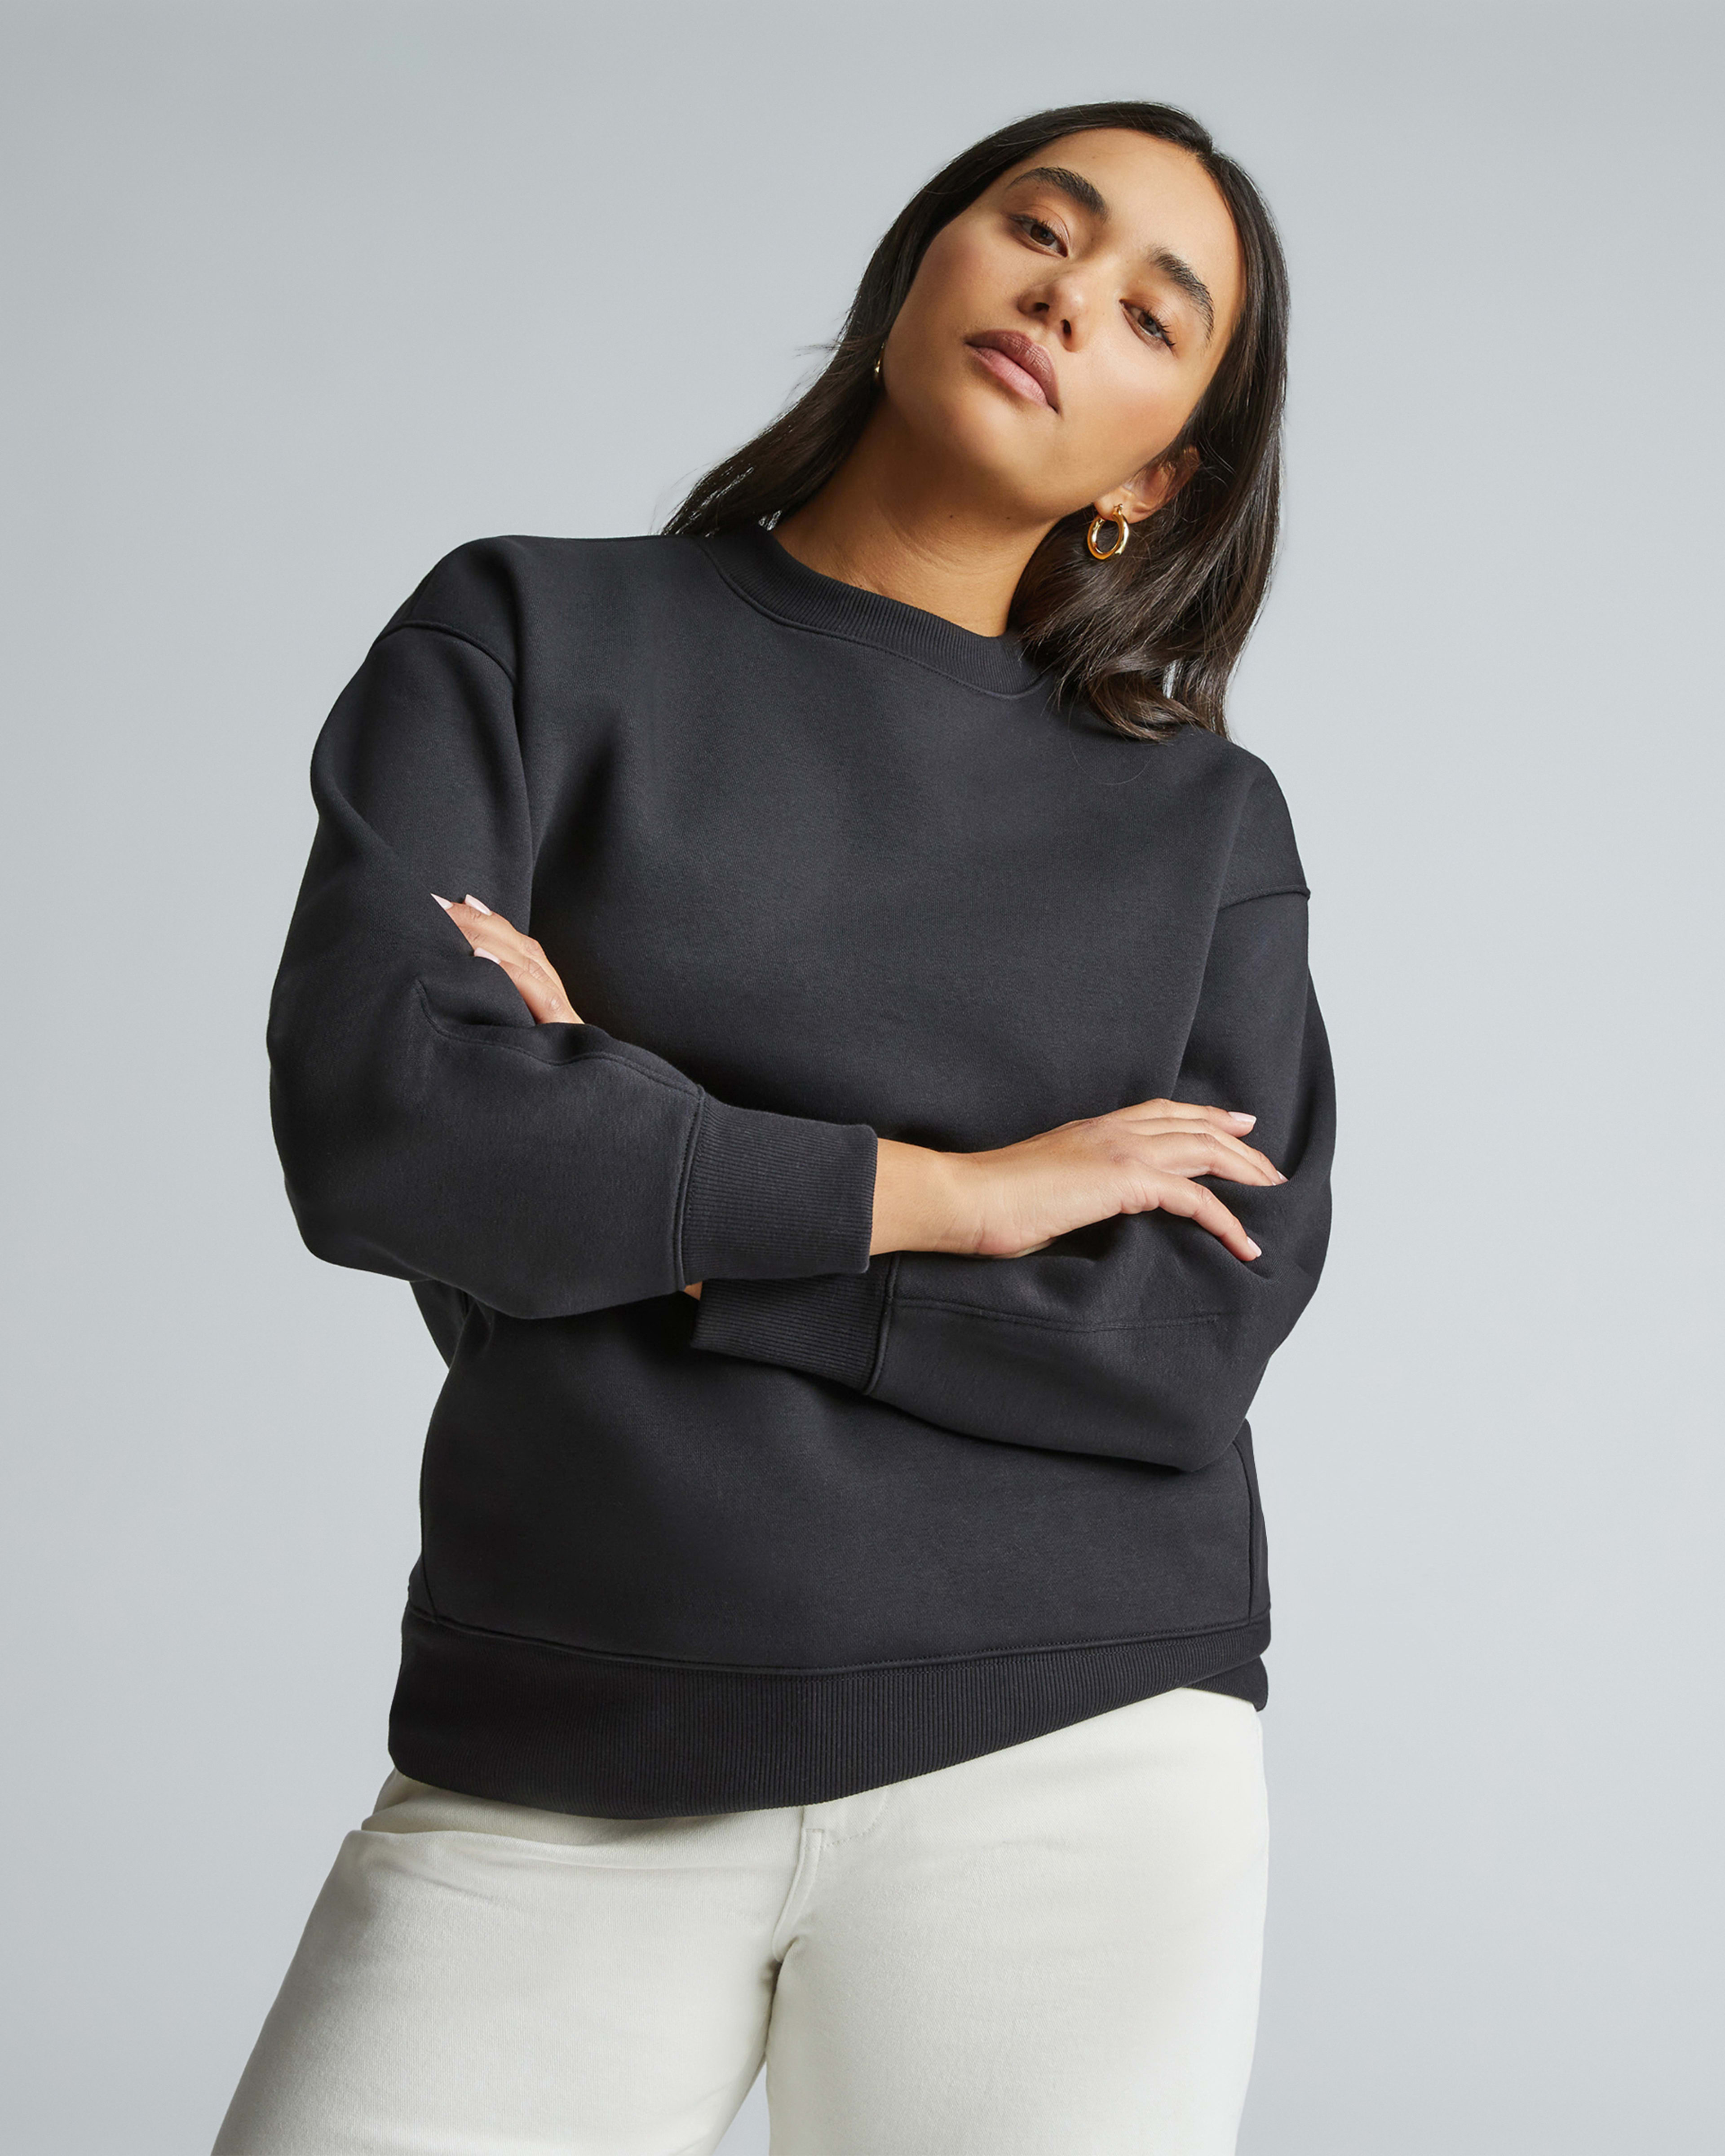 Sweatshirts for Women - Sweatshirts & Hoodies – Everlane